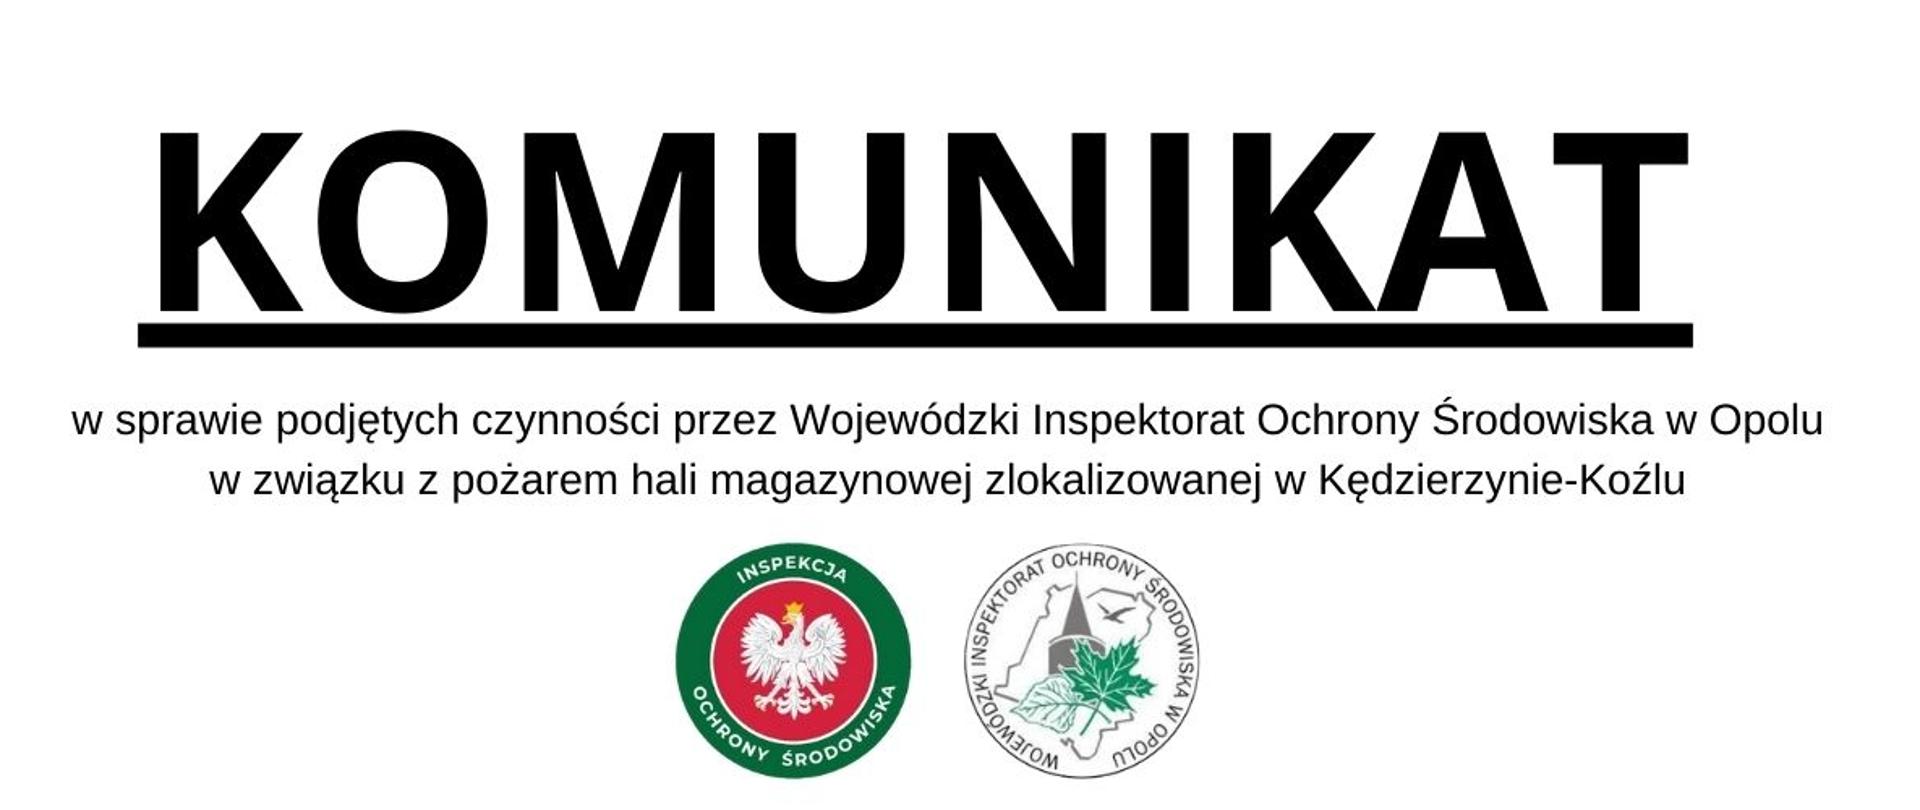 Komunikat w sprawie pożaru hali magazynowej w Kędzierzynie-Koźlu